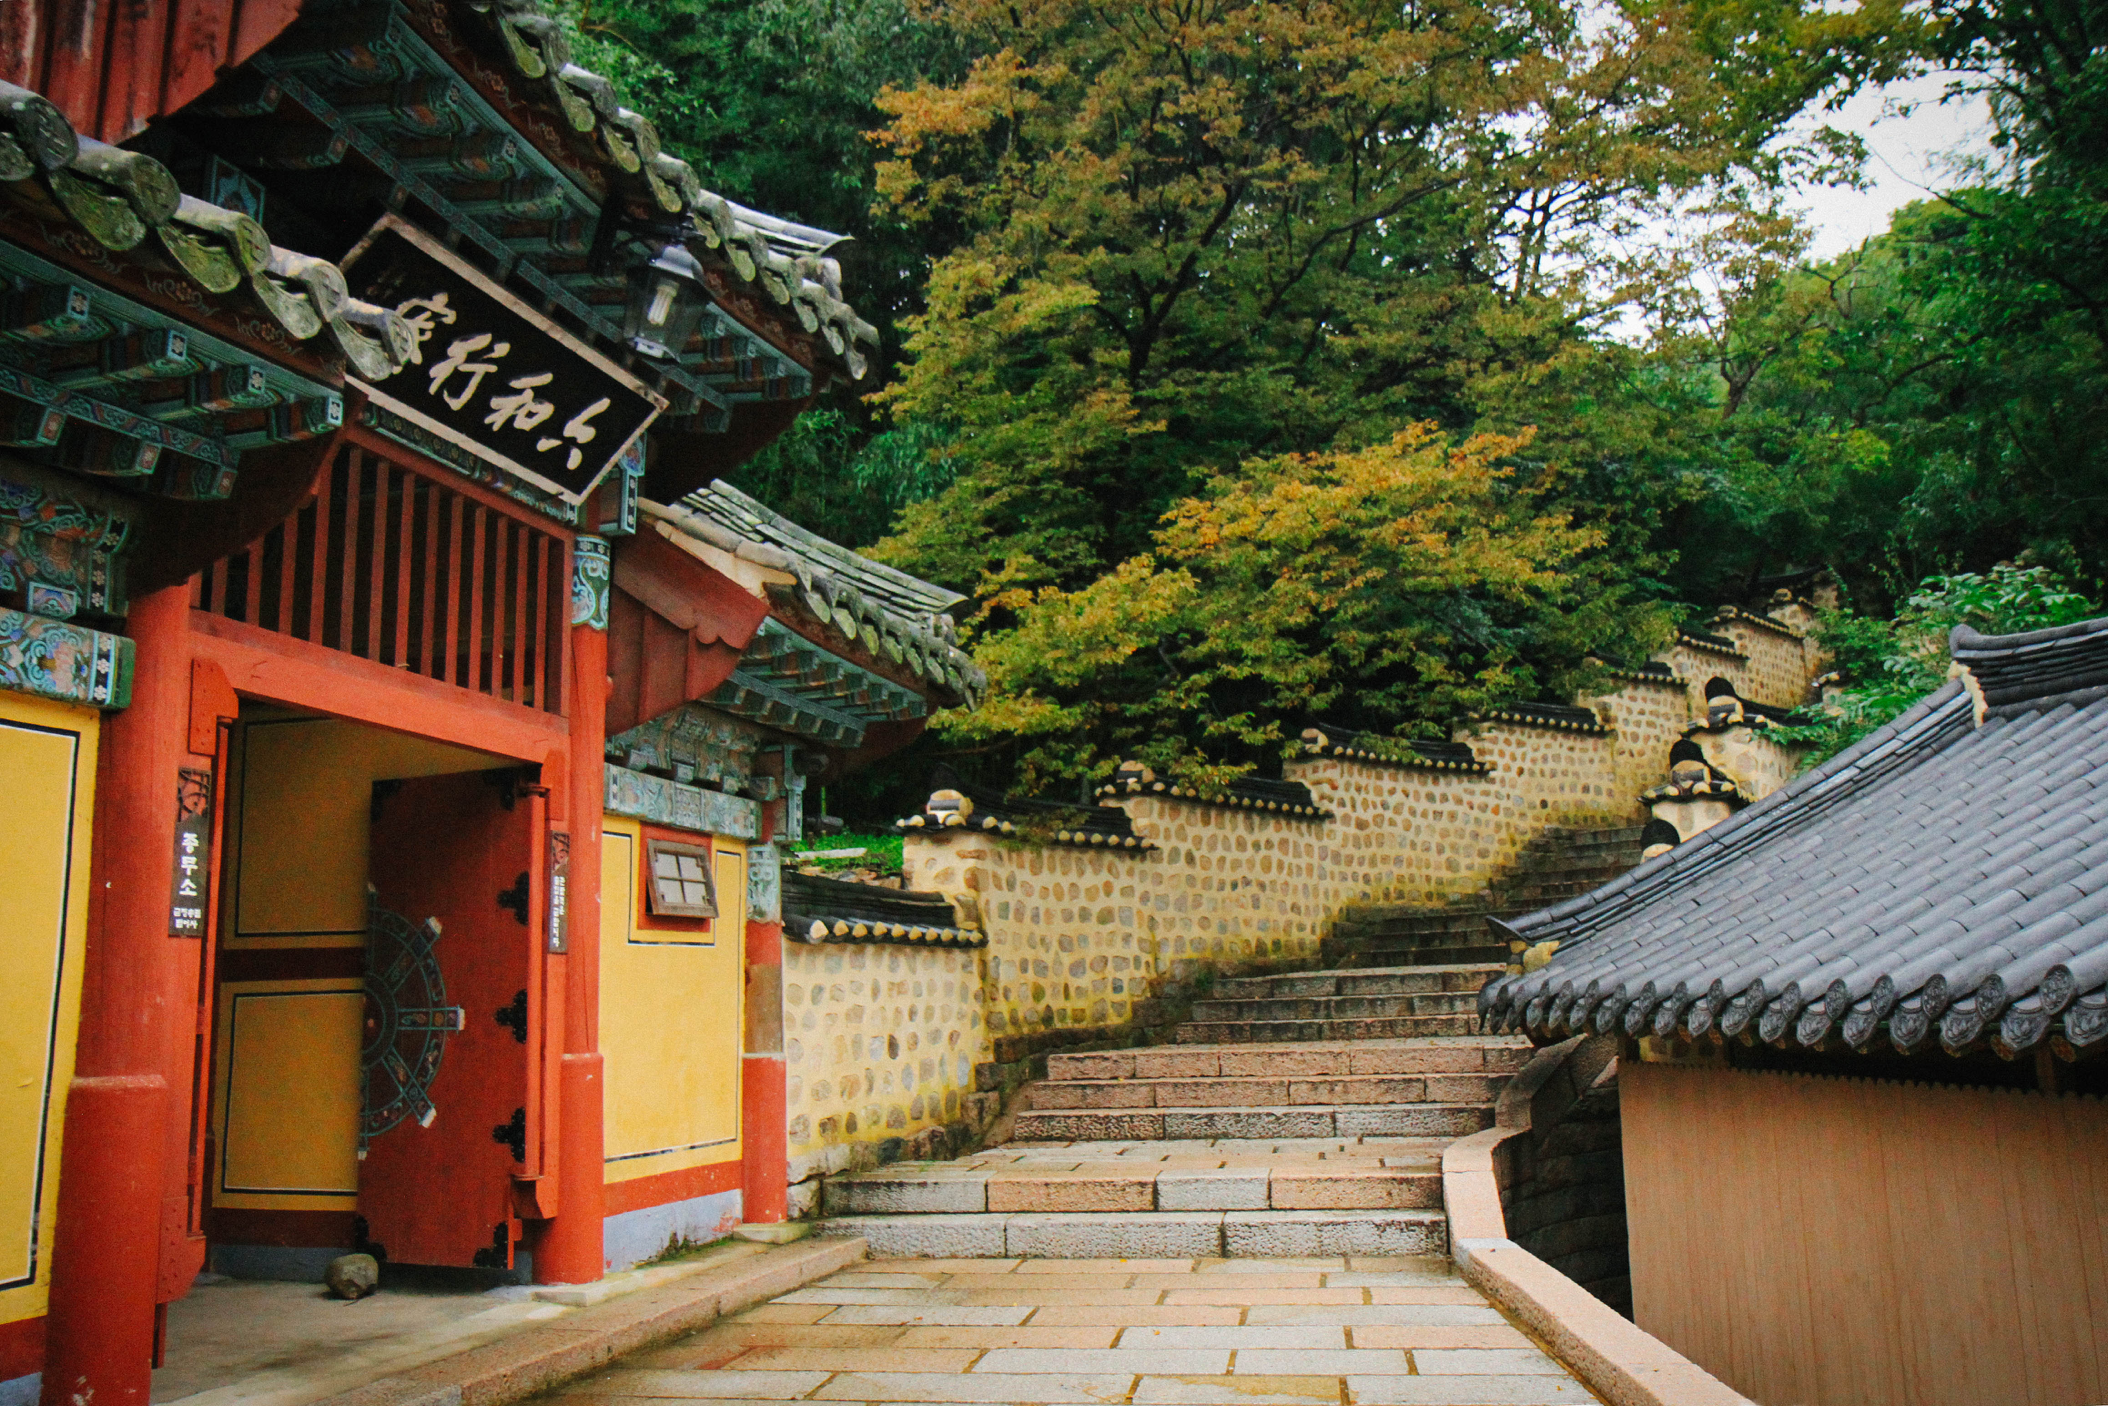 Entrance and stairs at Haedong Yonggungsa Temple